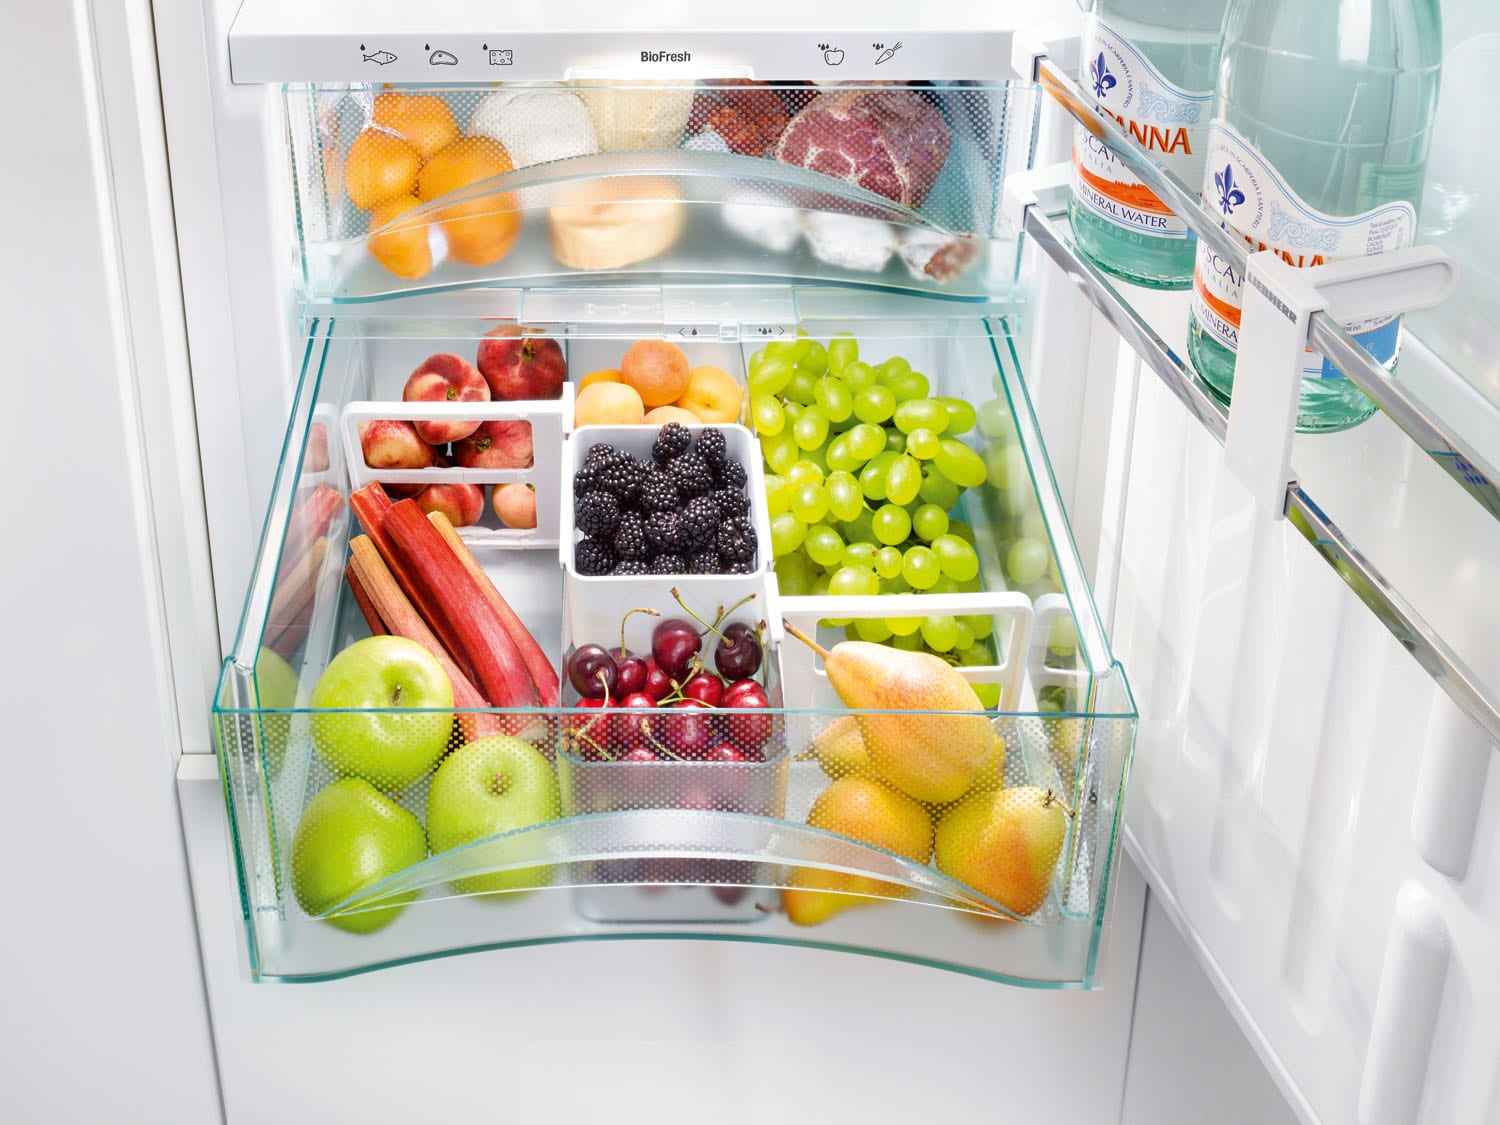 Хранение продуктов в холодильнике грамотно правильное по полкам